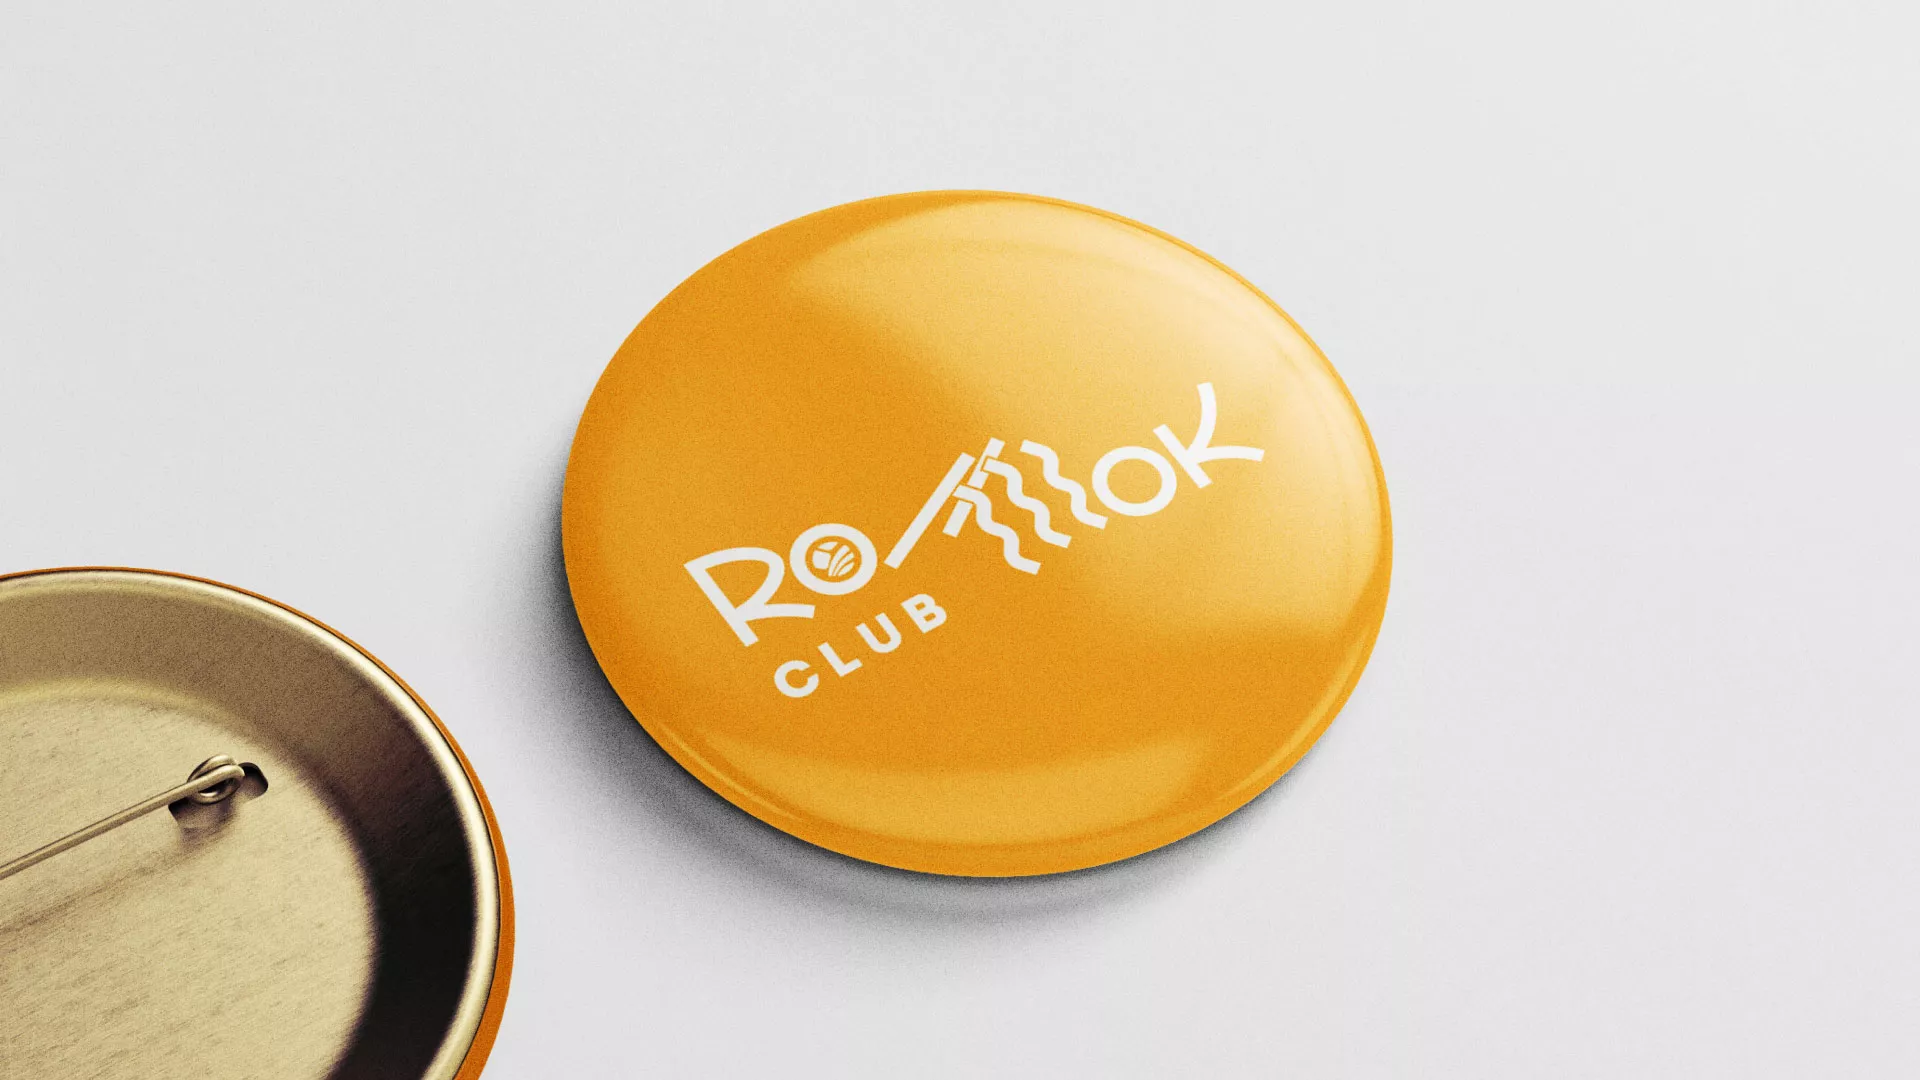 Создание логотипа суши-бара «Roll Wok Club» в Димитровграде